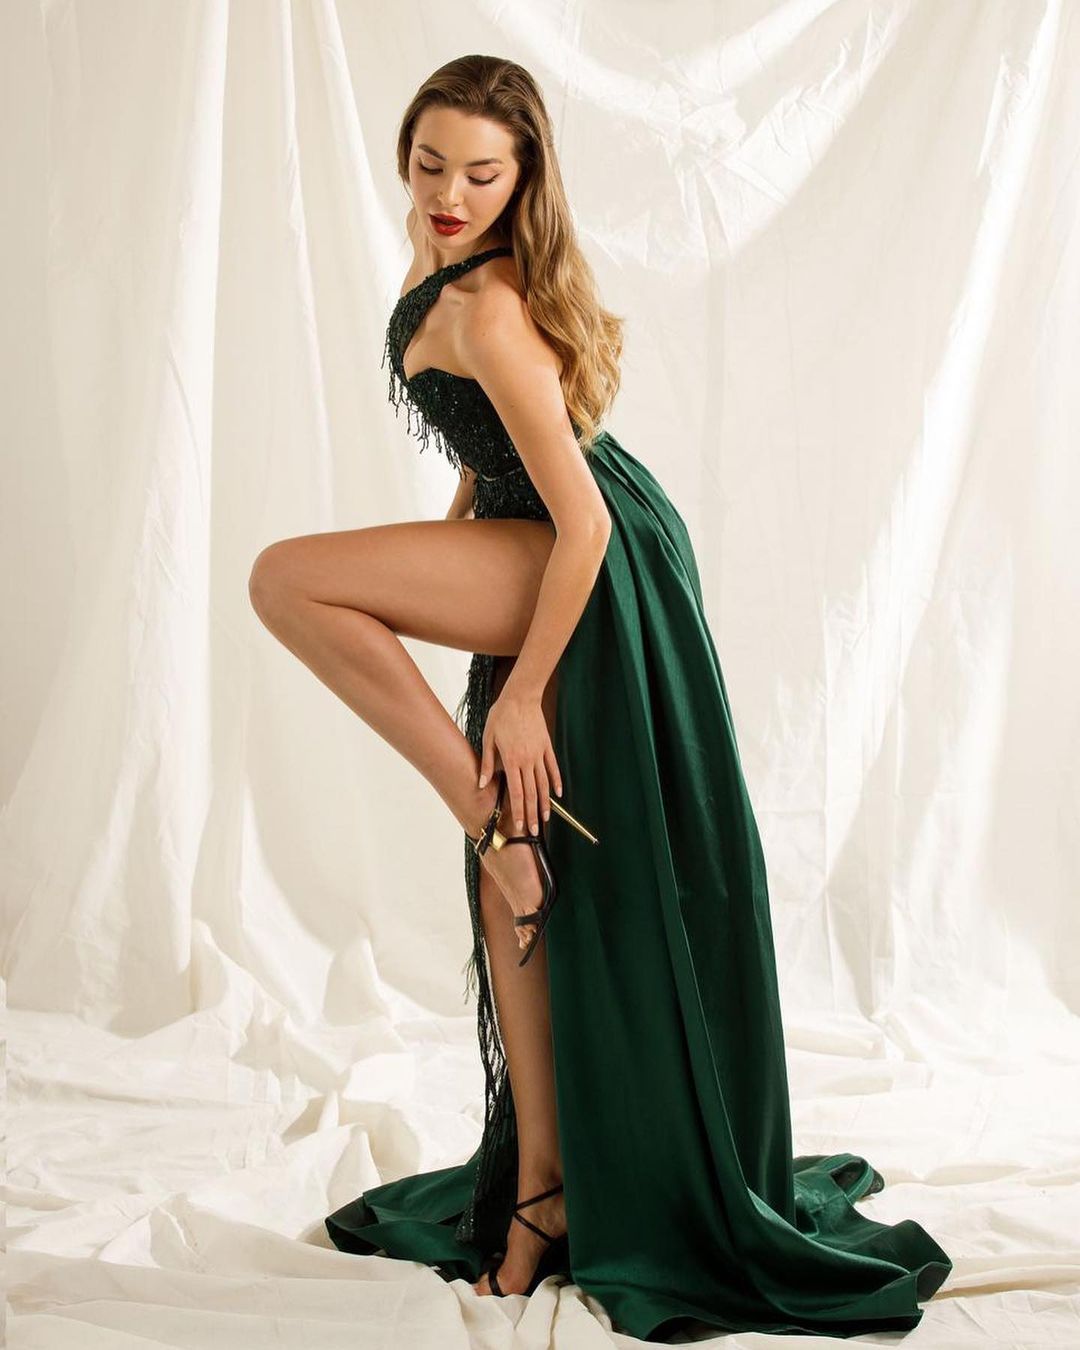 &#34;Hoa hậu nhà giàu&#34; Tây Ban Nha mặc gì cũng đẹp hơn người vì cao 1m75, body chuẩn mực - 4